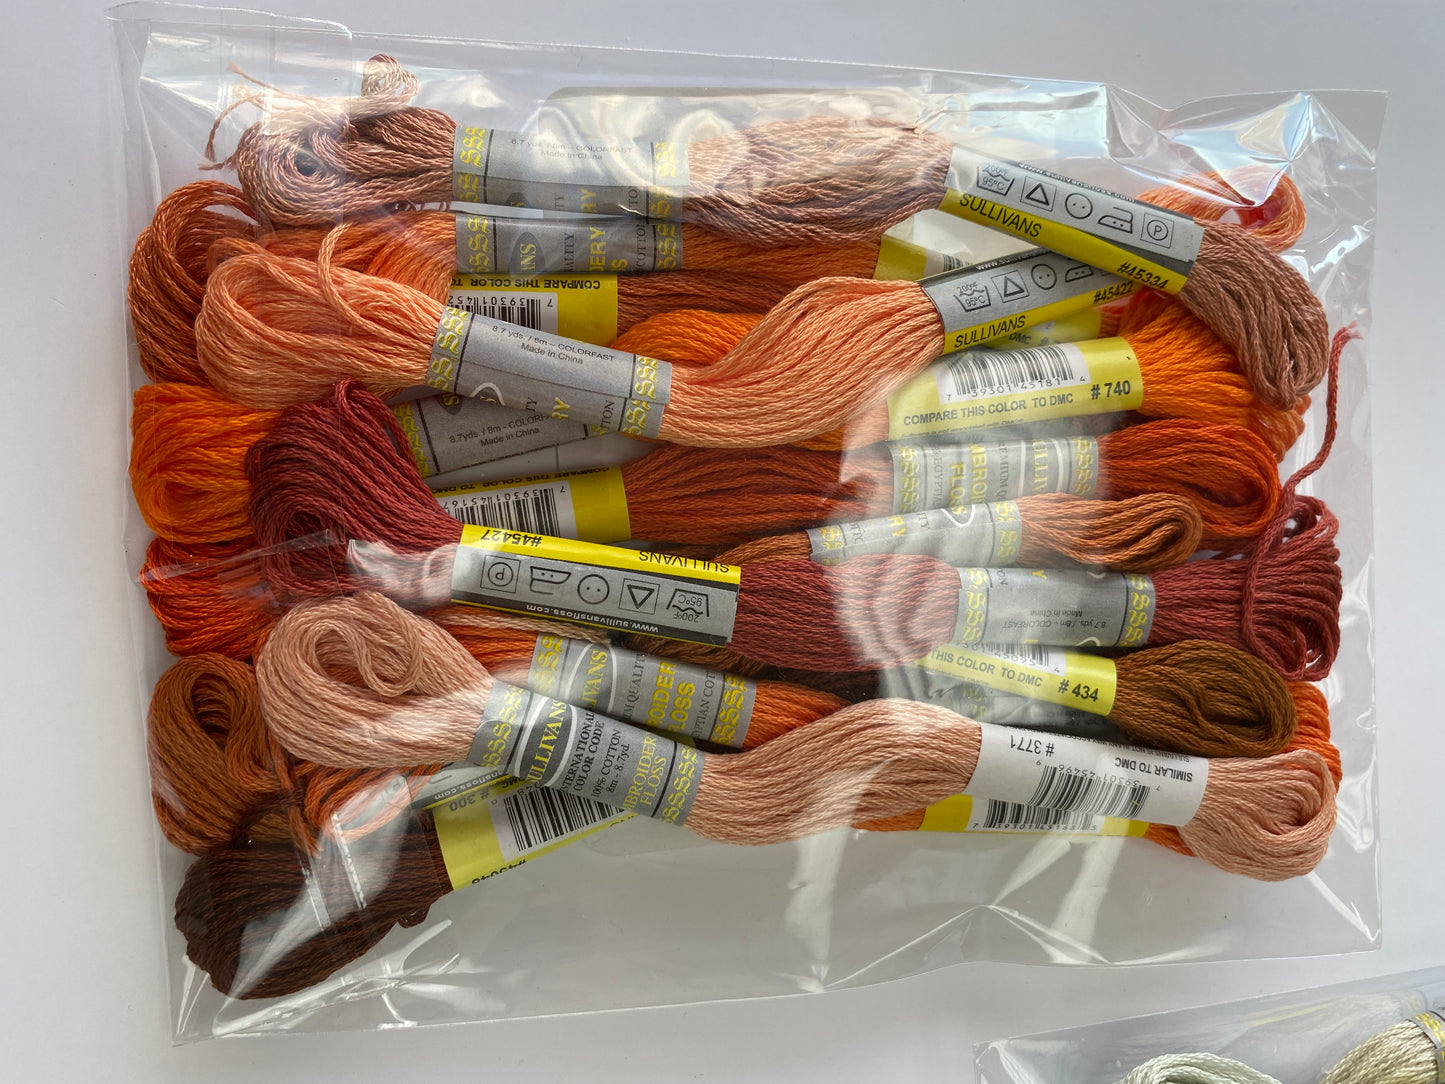 Sullivan Thread Packs